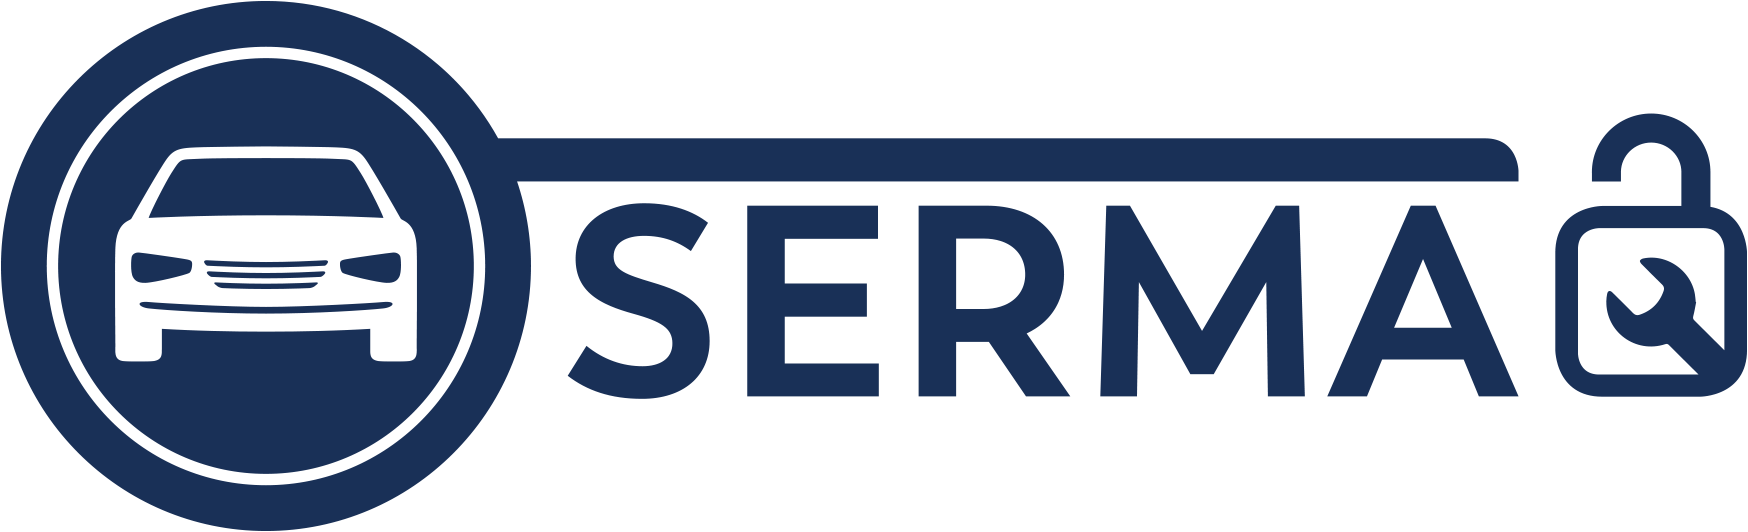 Serma Logo